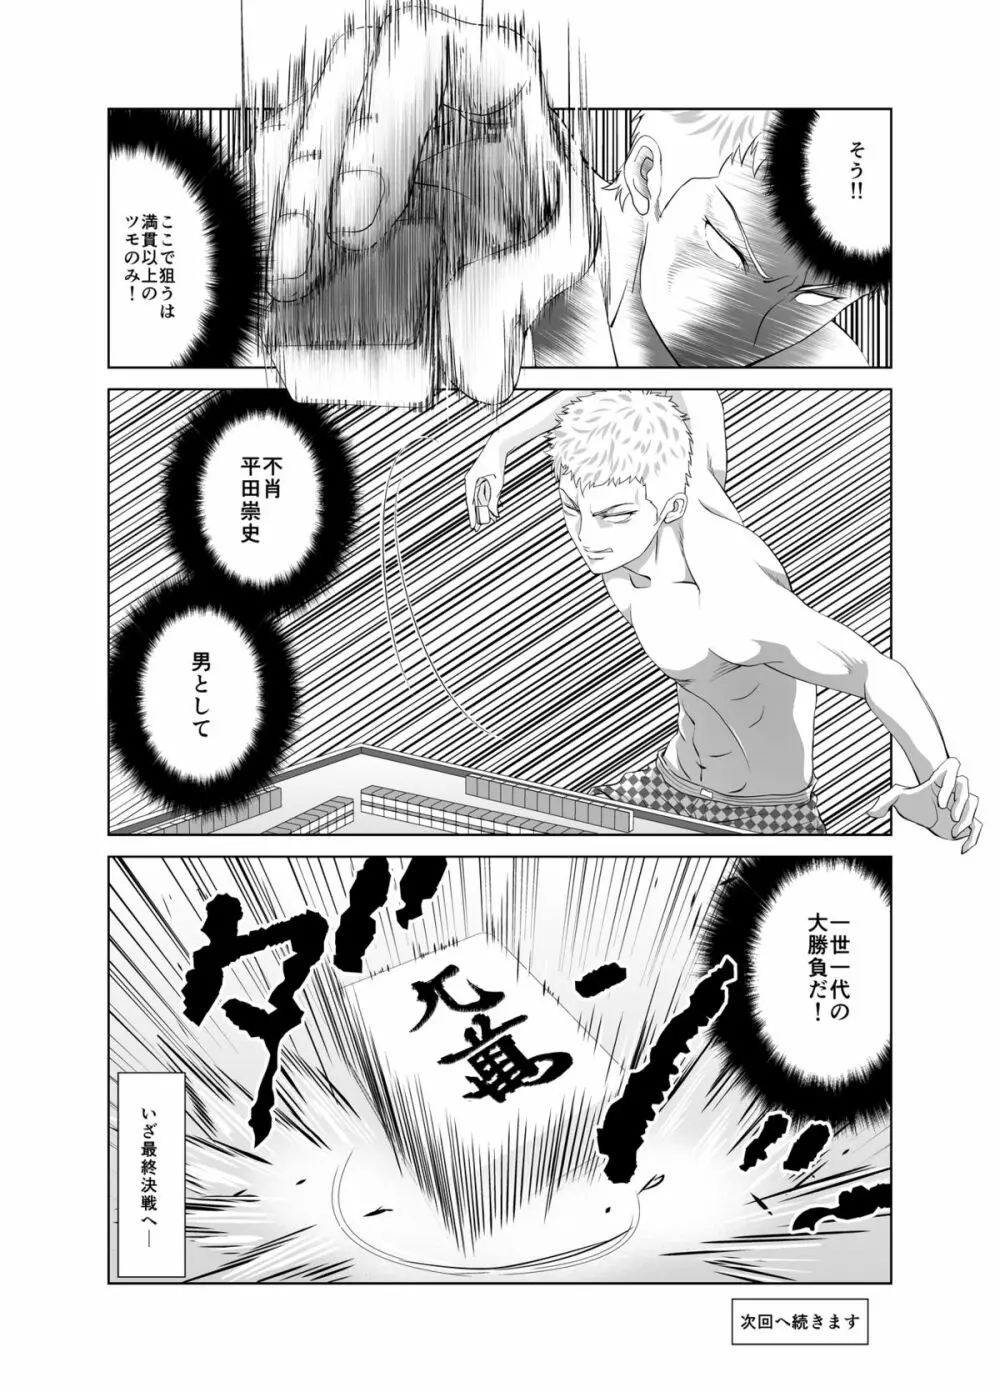 脱衣麻雀～漫画編～【完成版】 22ページ